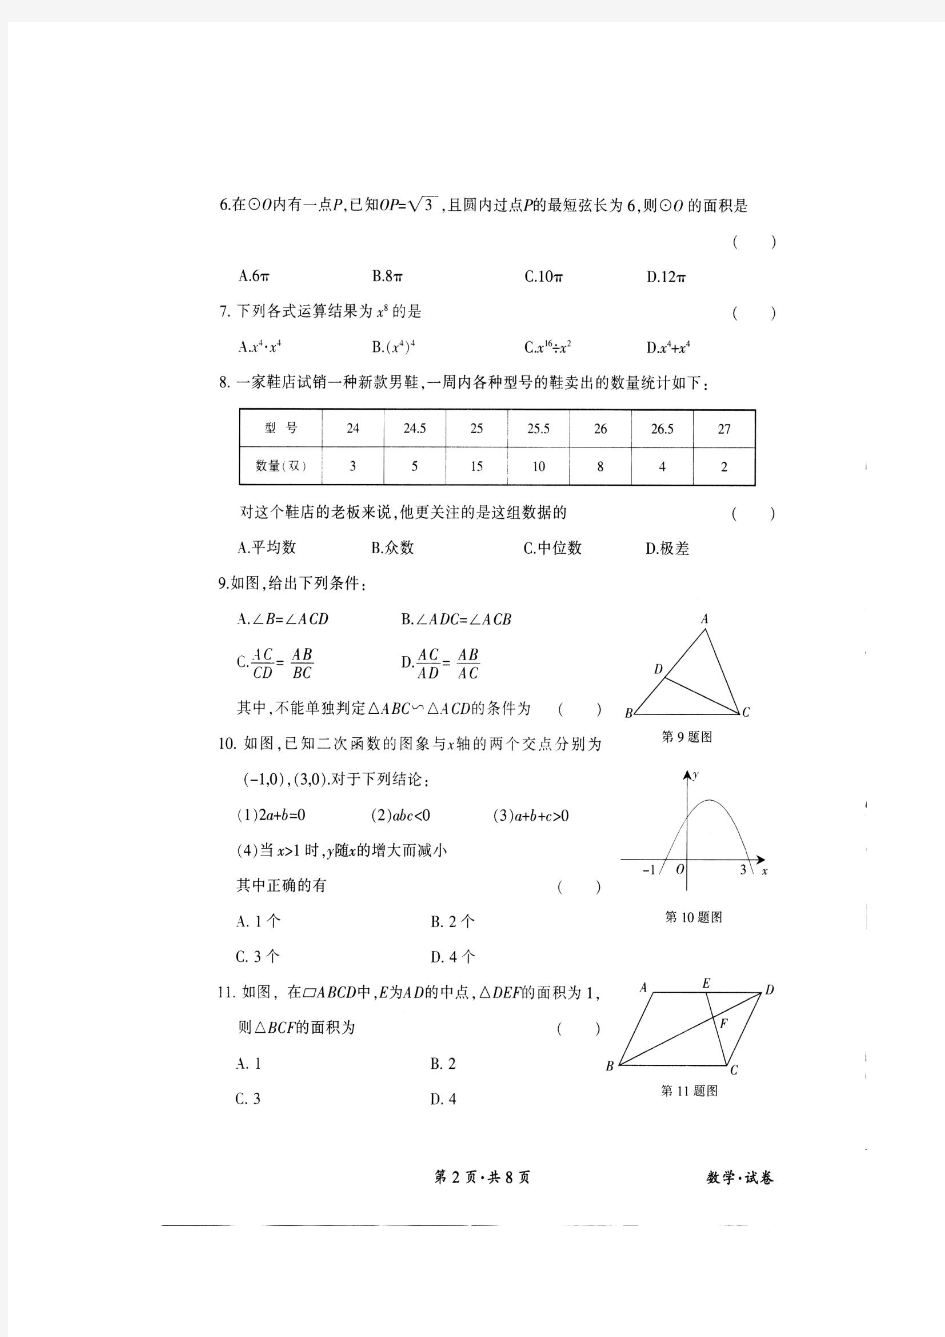 庆阳市2013年初中毕业会考数学试卷